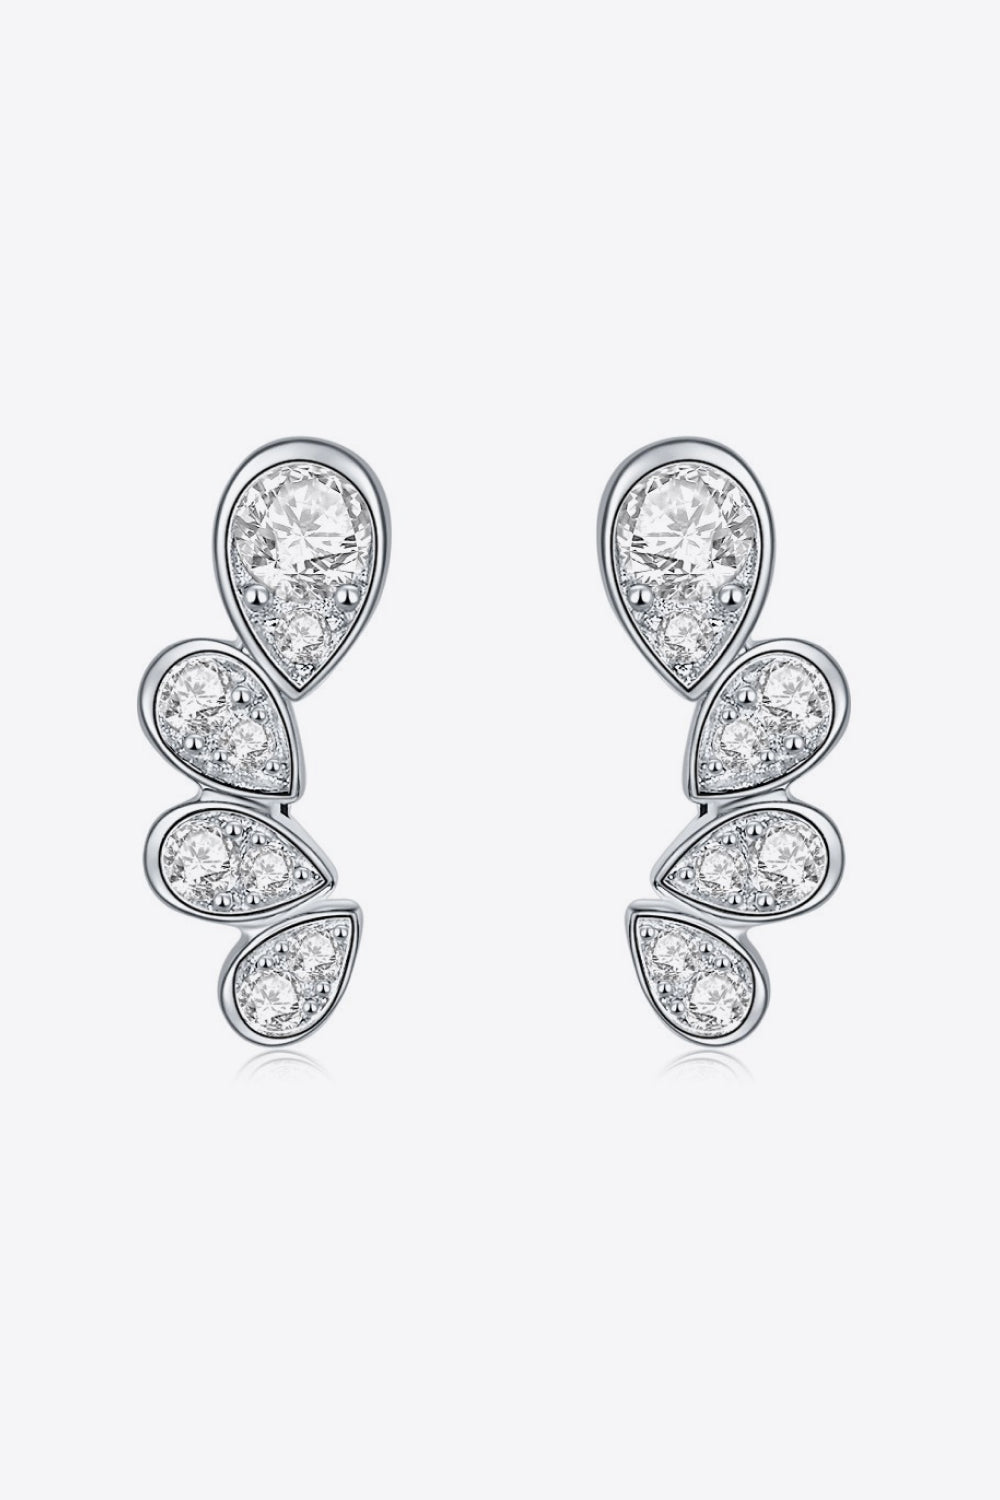 Pear Shape Moissanite Earrings - Earrings - FITGGINS